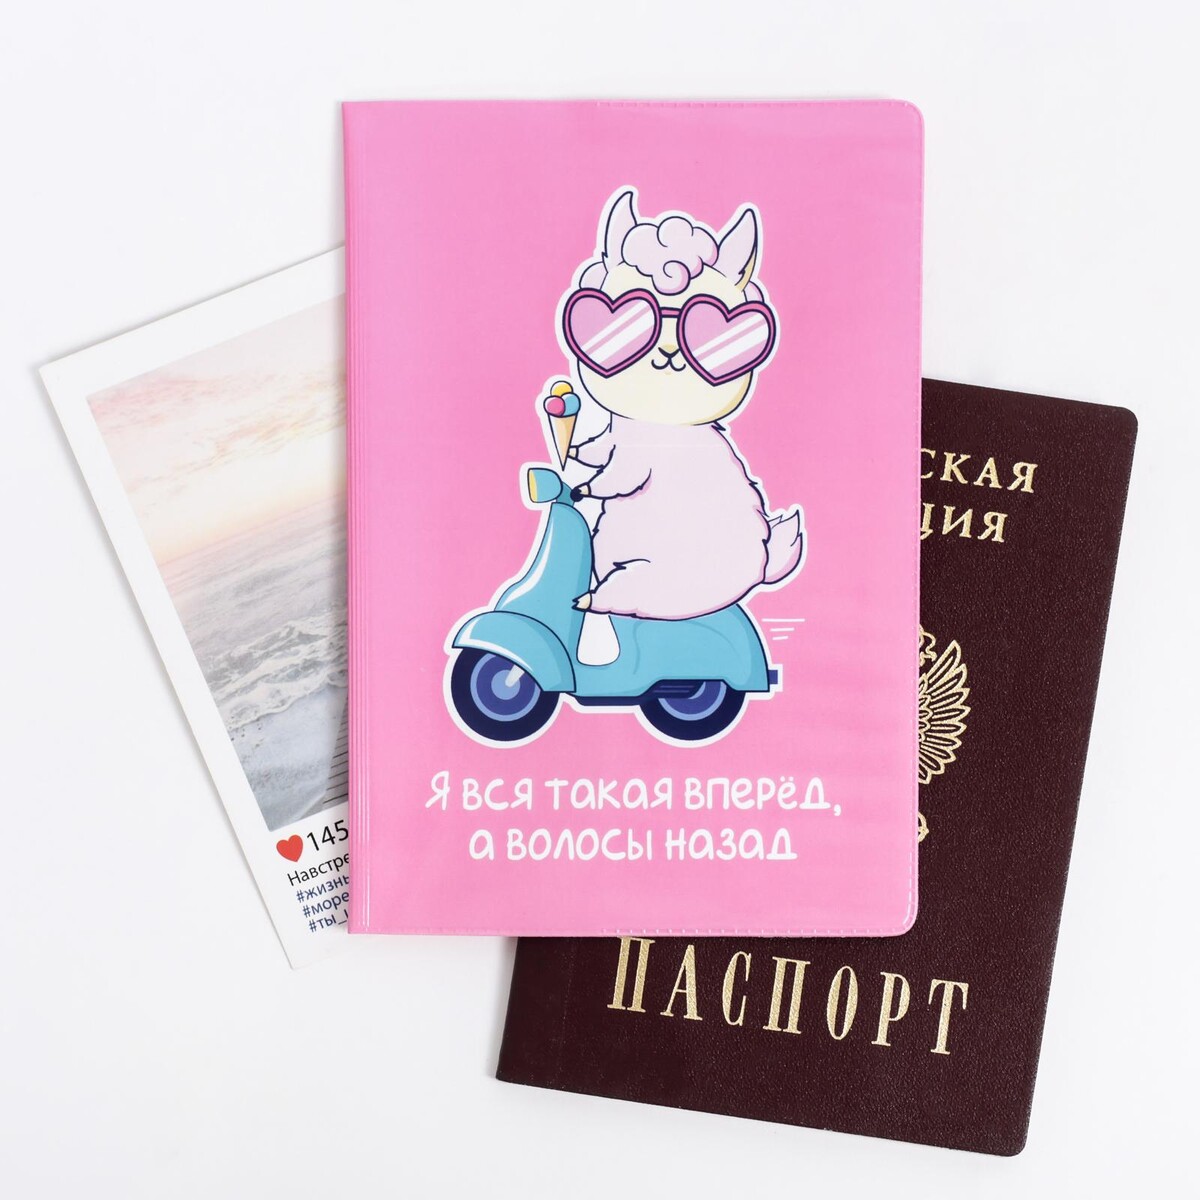 Обложка на паспорт пвх обложка на паспорт мрамор серая